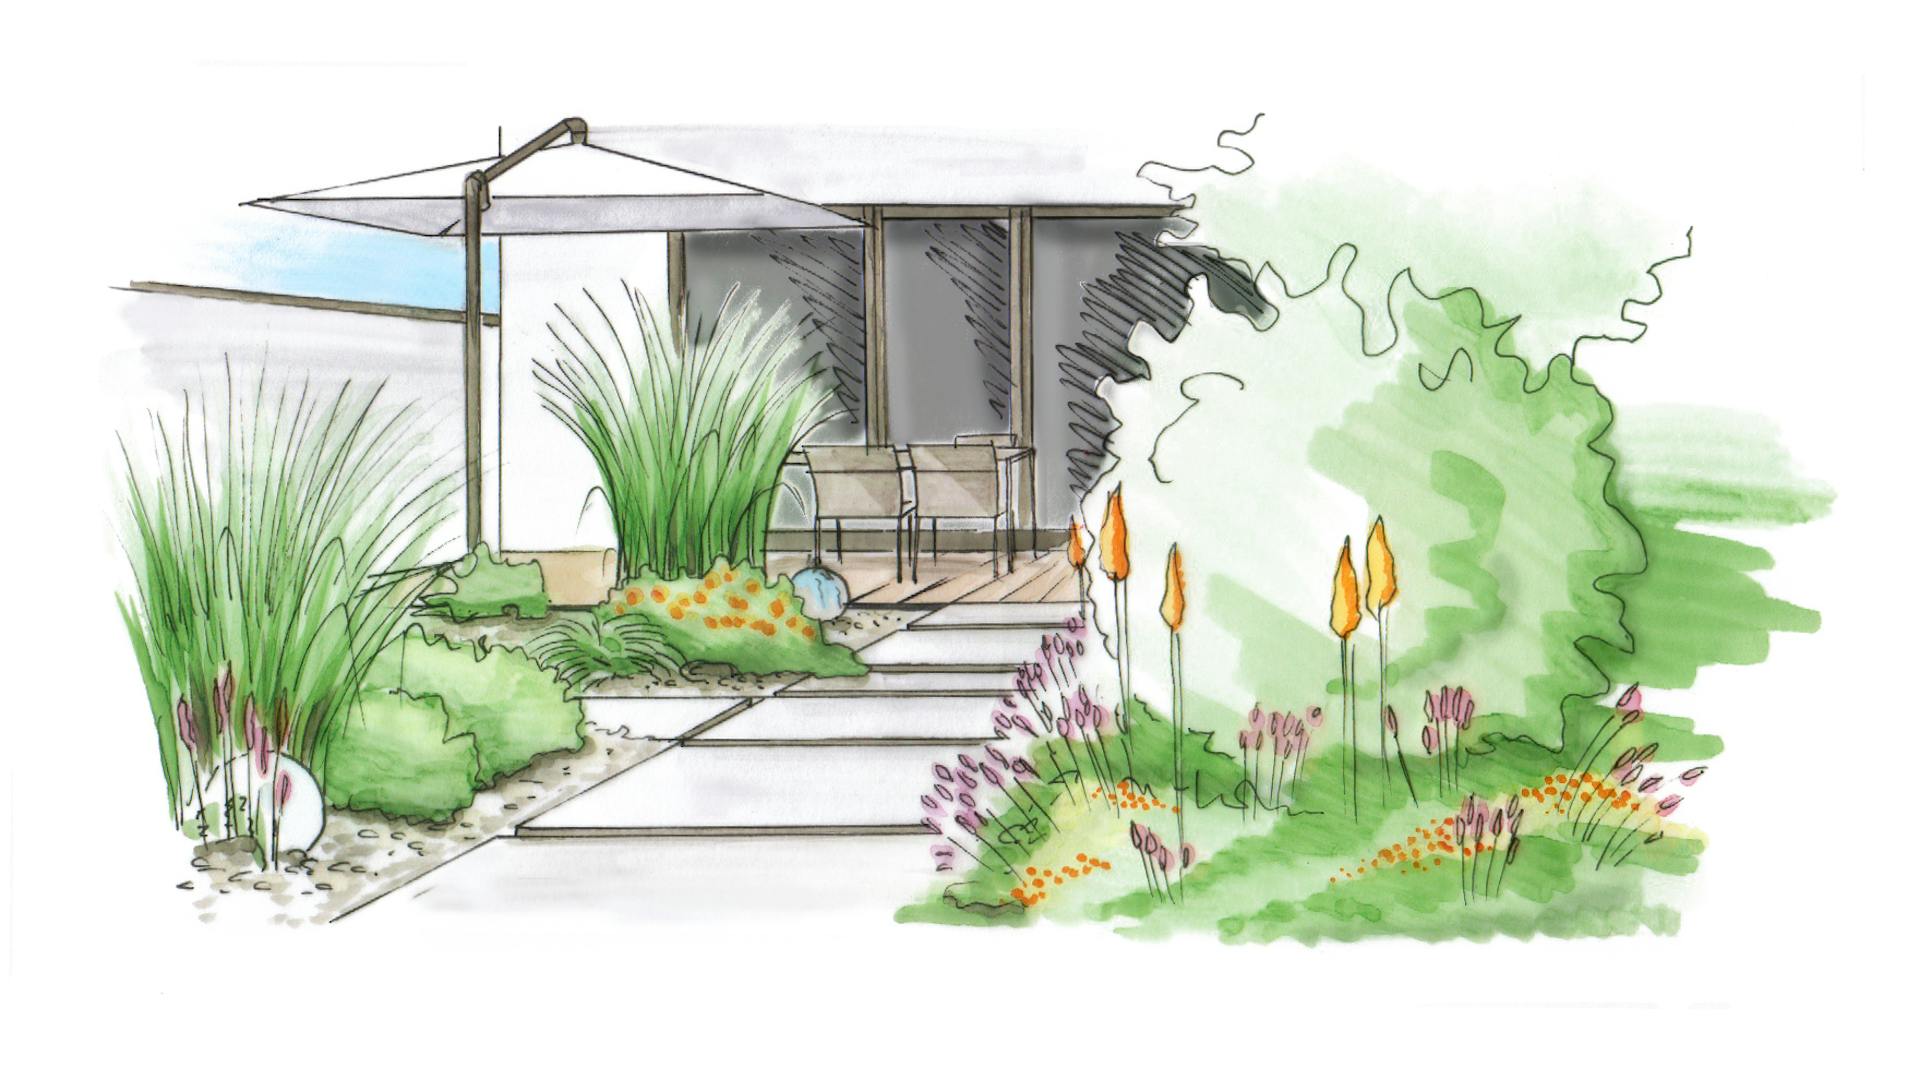 Gartengestaltung Garten modern gestalten Skizze mit moderner Terrasse mit großen Bodenplatten pointierter Bepflanzung in gedeckten Farben und eckigem Sonnenschutz